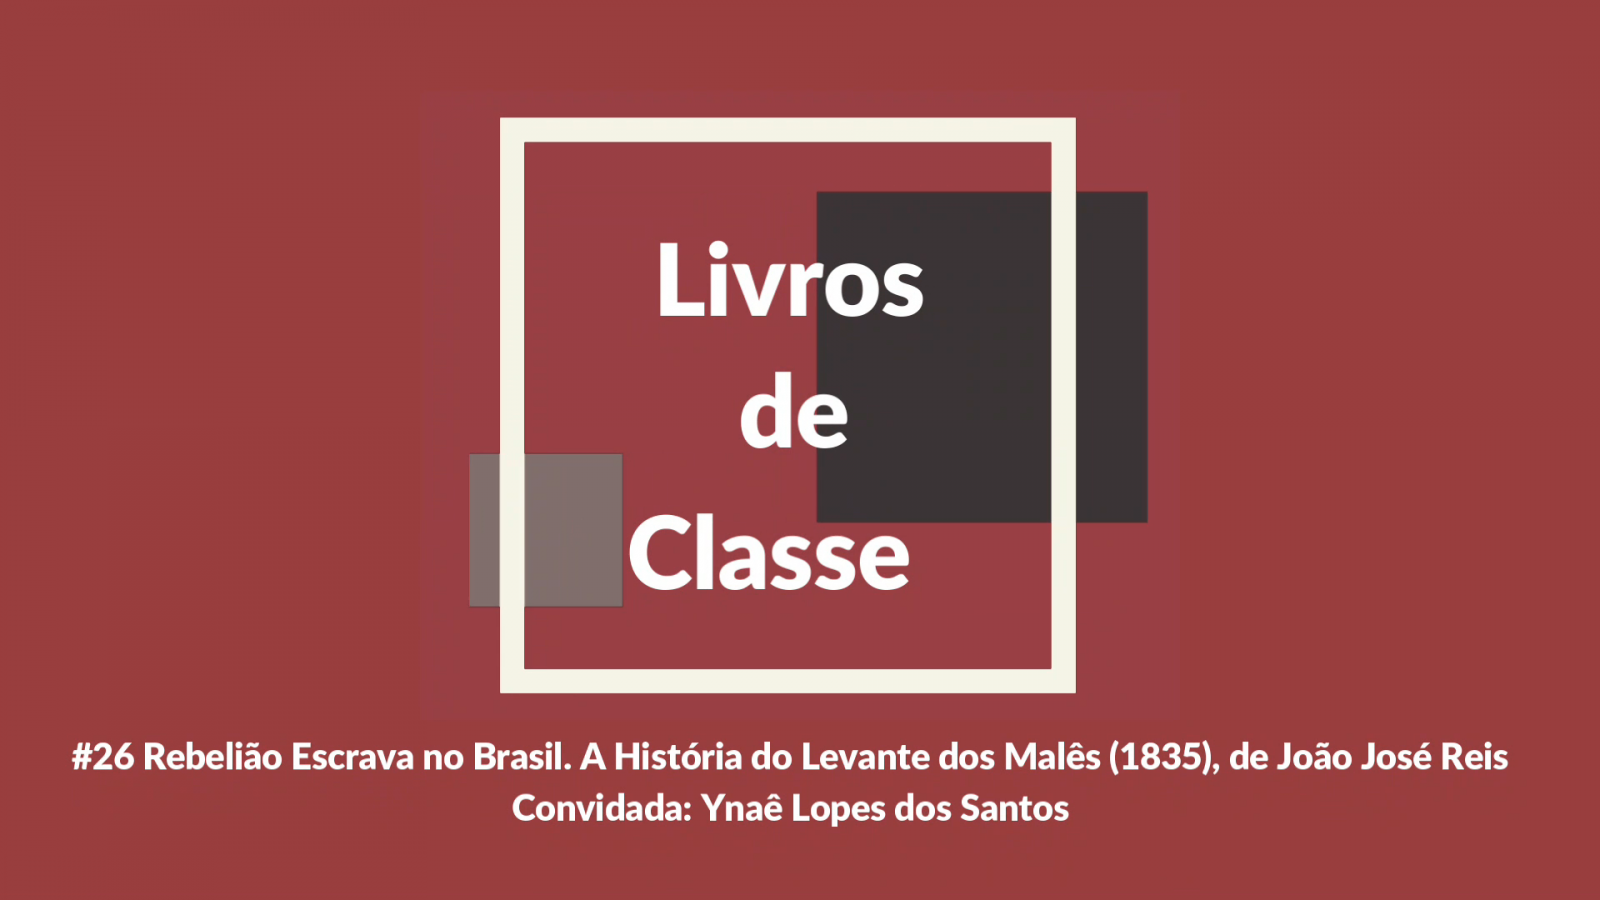 Livros de Classe #26: Rebelião Escrava no Brasil. A História do Levante dos Malês (1835), de João José Reis, por Ynaê Lopes dos Santos